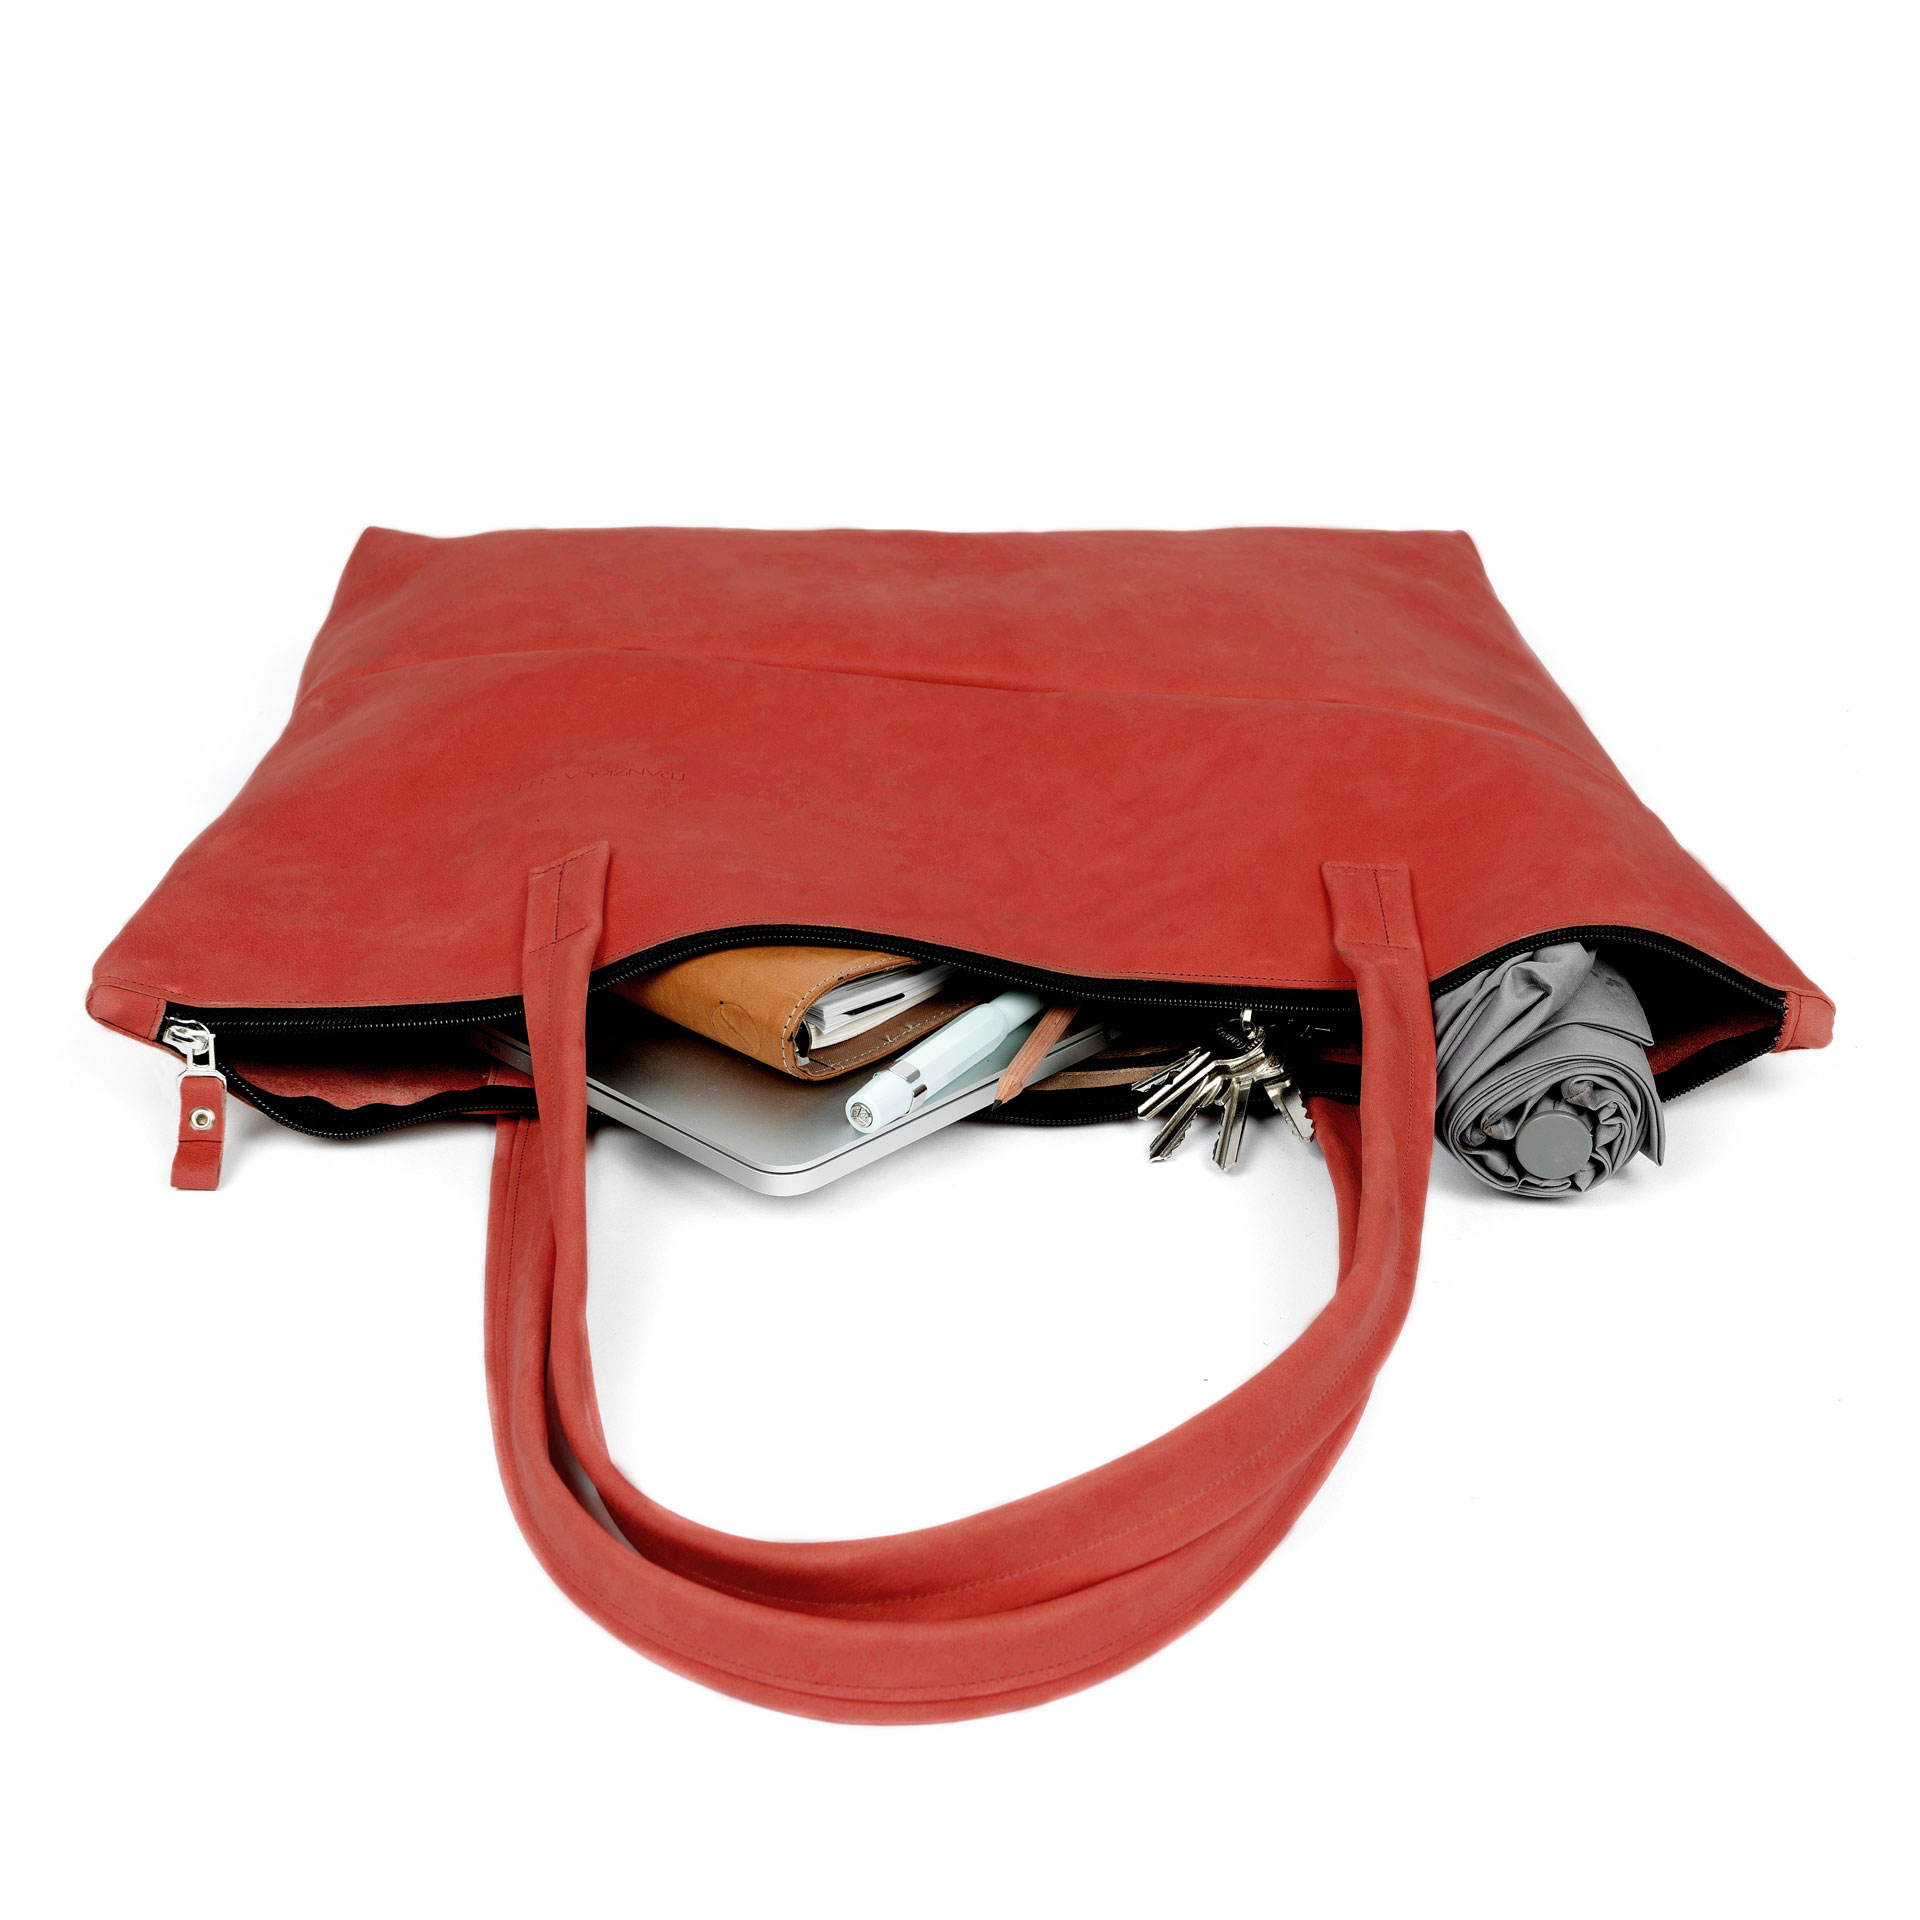 XXL-Shopper ELA aus nachhaltigem Naturleder in Rot gepackt mit Laptop, Notizbuch, Schirm und diversen Kleinutensilien